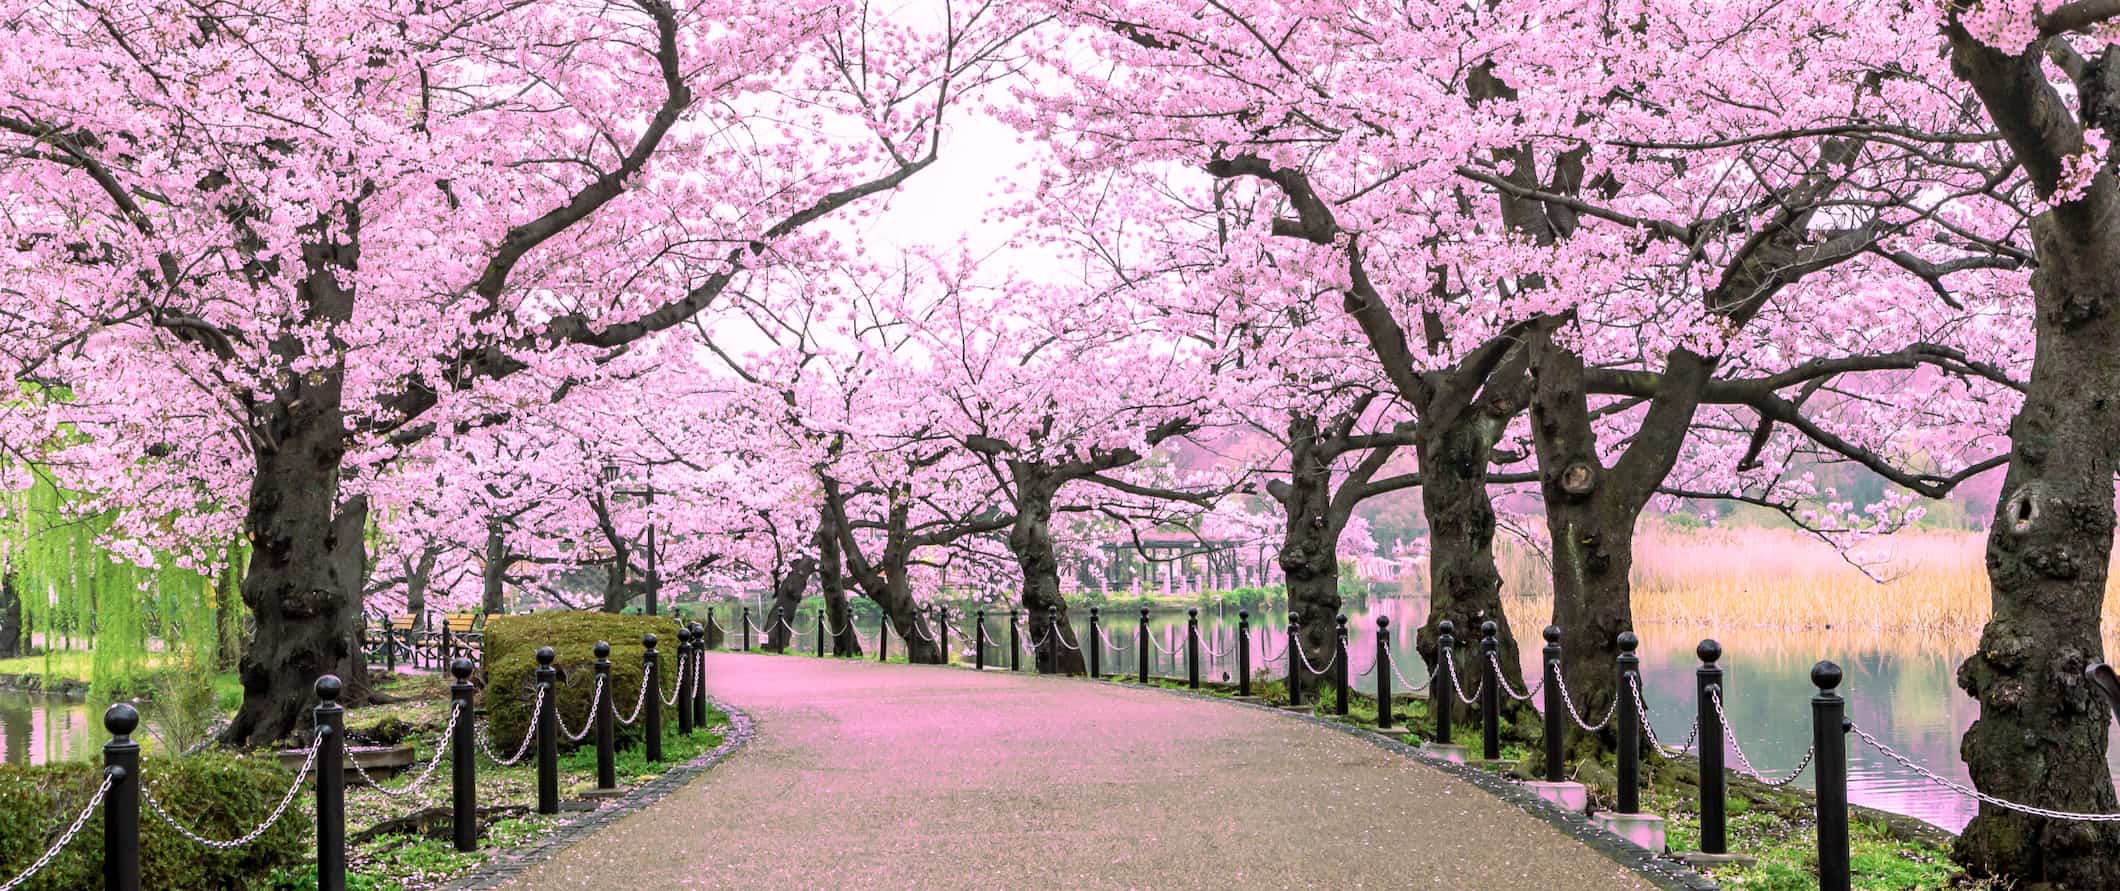 Uma trilha estreita repleta de flores de cerejeira perto de um rio em Tóquio, Japão